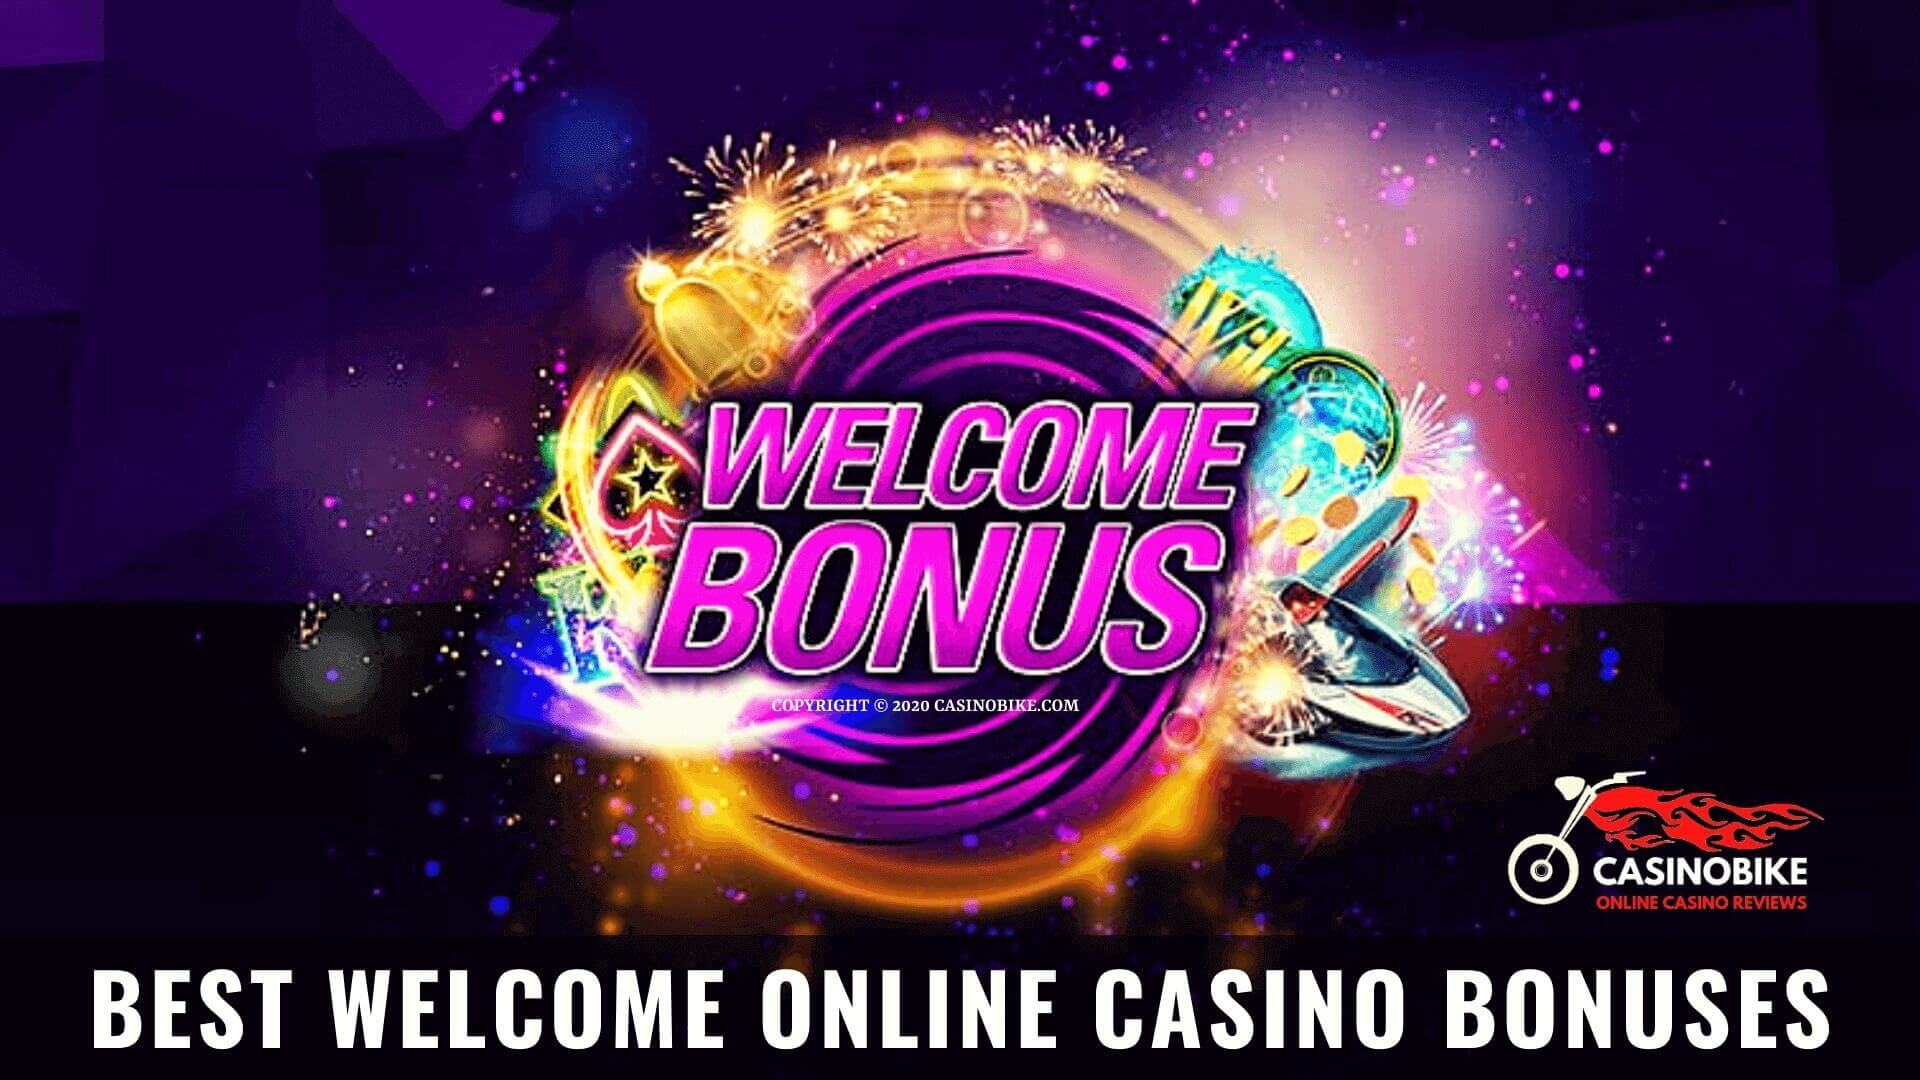 Новые бонусы в онлайн-казино за Август - лучшие предложения для игры